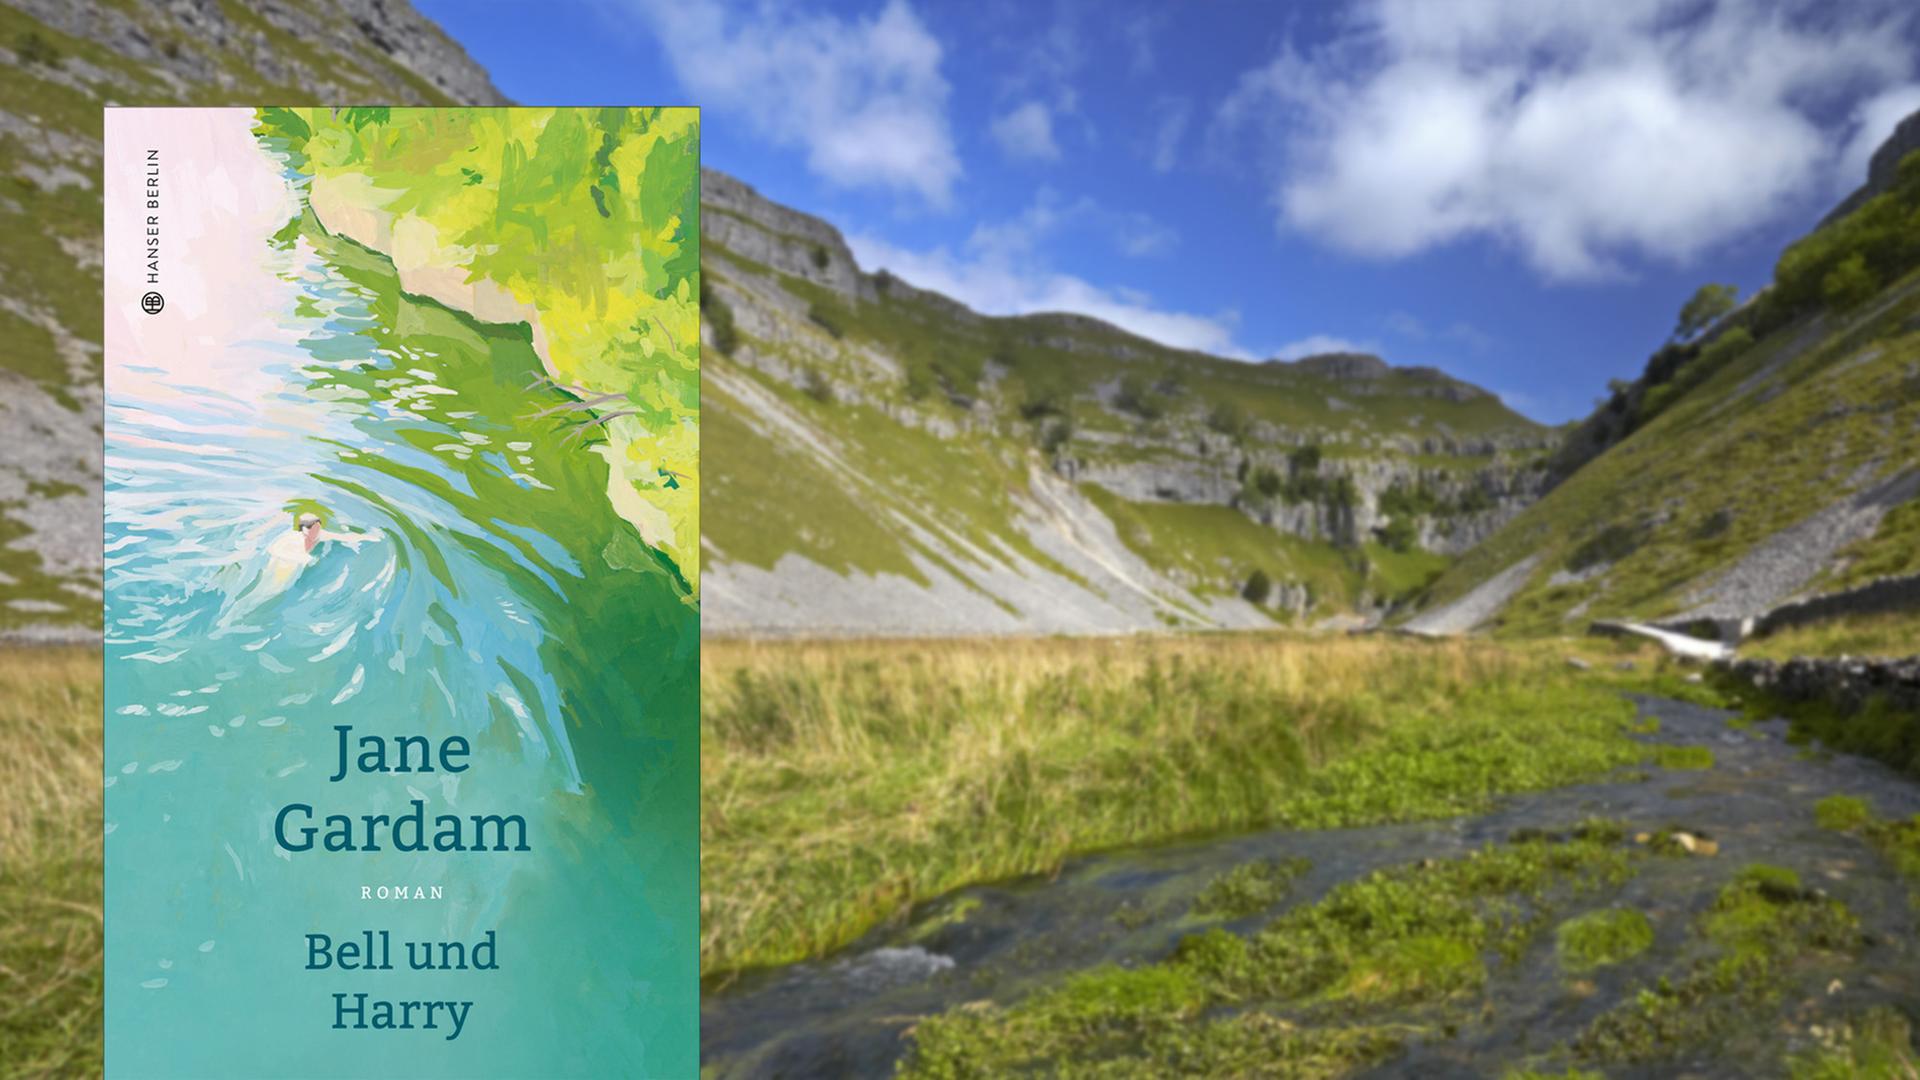 Cover von Jane Gardam "Bell und Harry", im Hintergrund ist der Yorkshire Dales National Park zu sehen